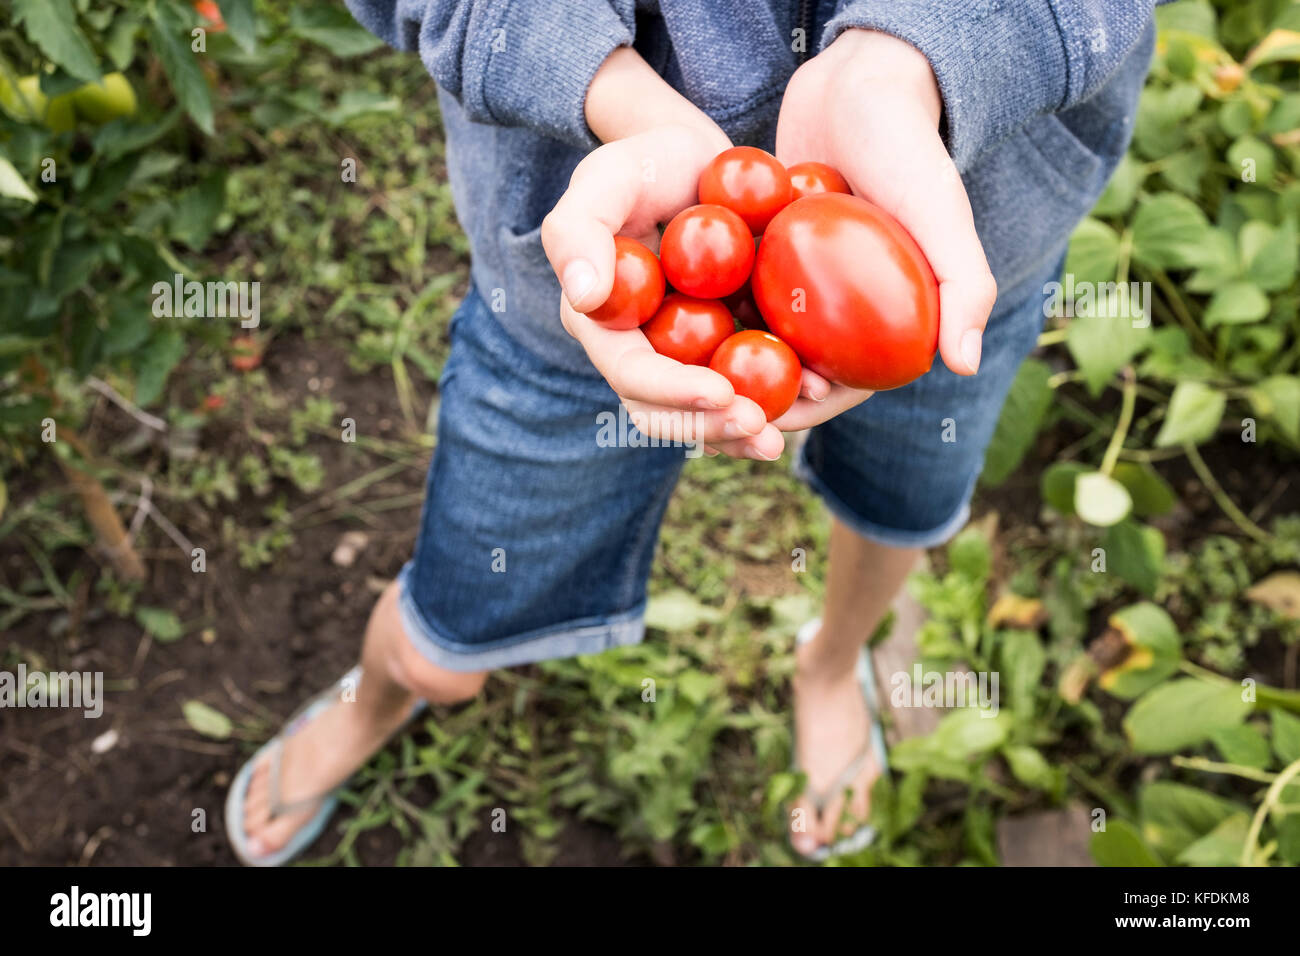 Ein junges Mädchen picks Bio Tomaten aus ihrem Haus Garten in bischeim, Frankreich. Stockfoto